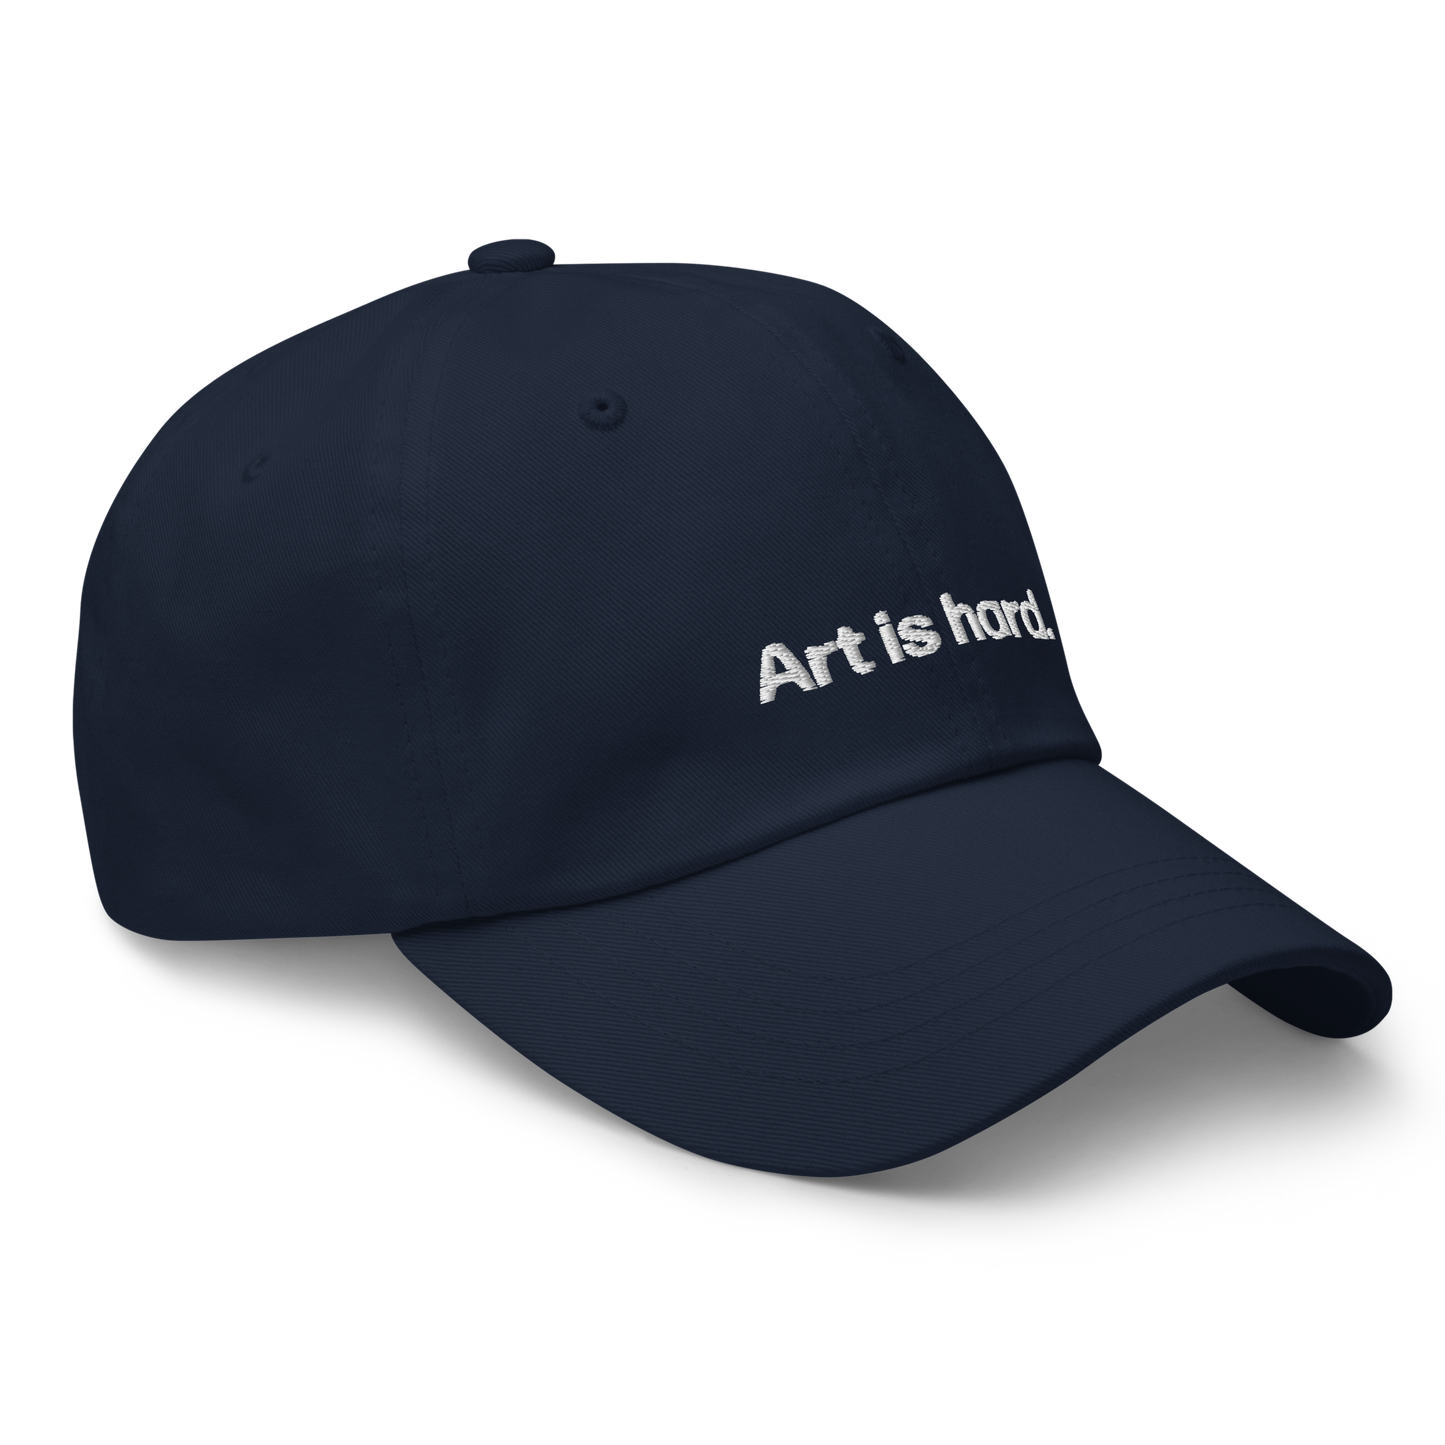 el arte es duro | gorra de papá